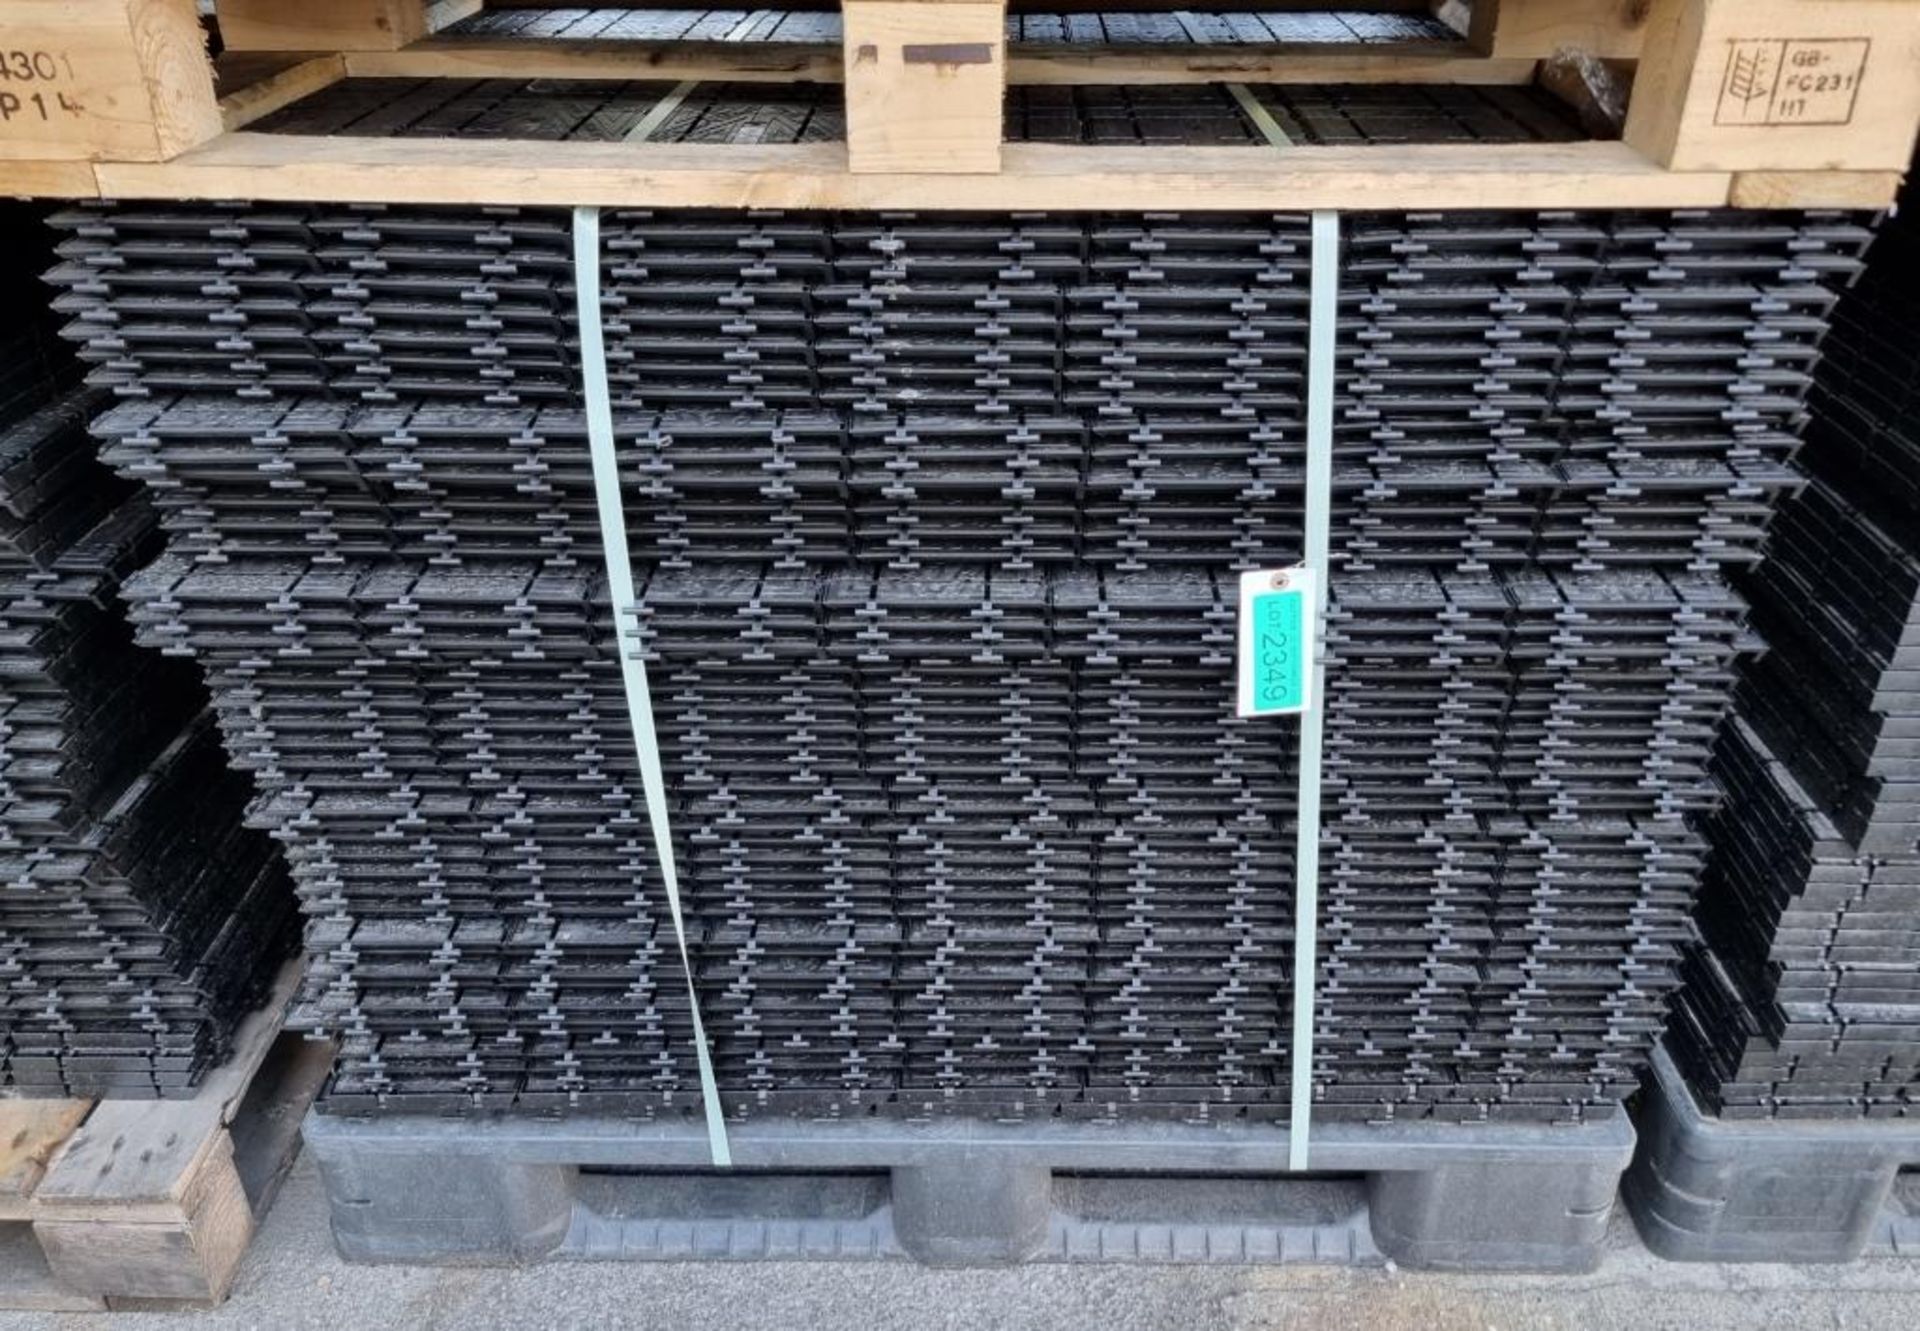 44x Rola Trac Ultra Flooring panels - L1000 x W1150mm